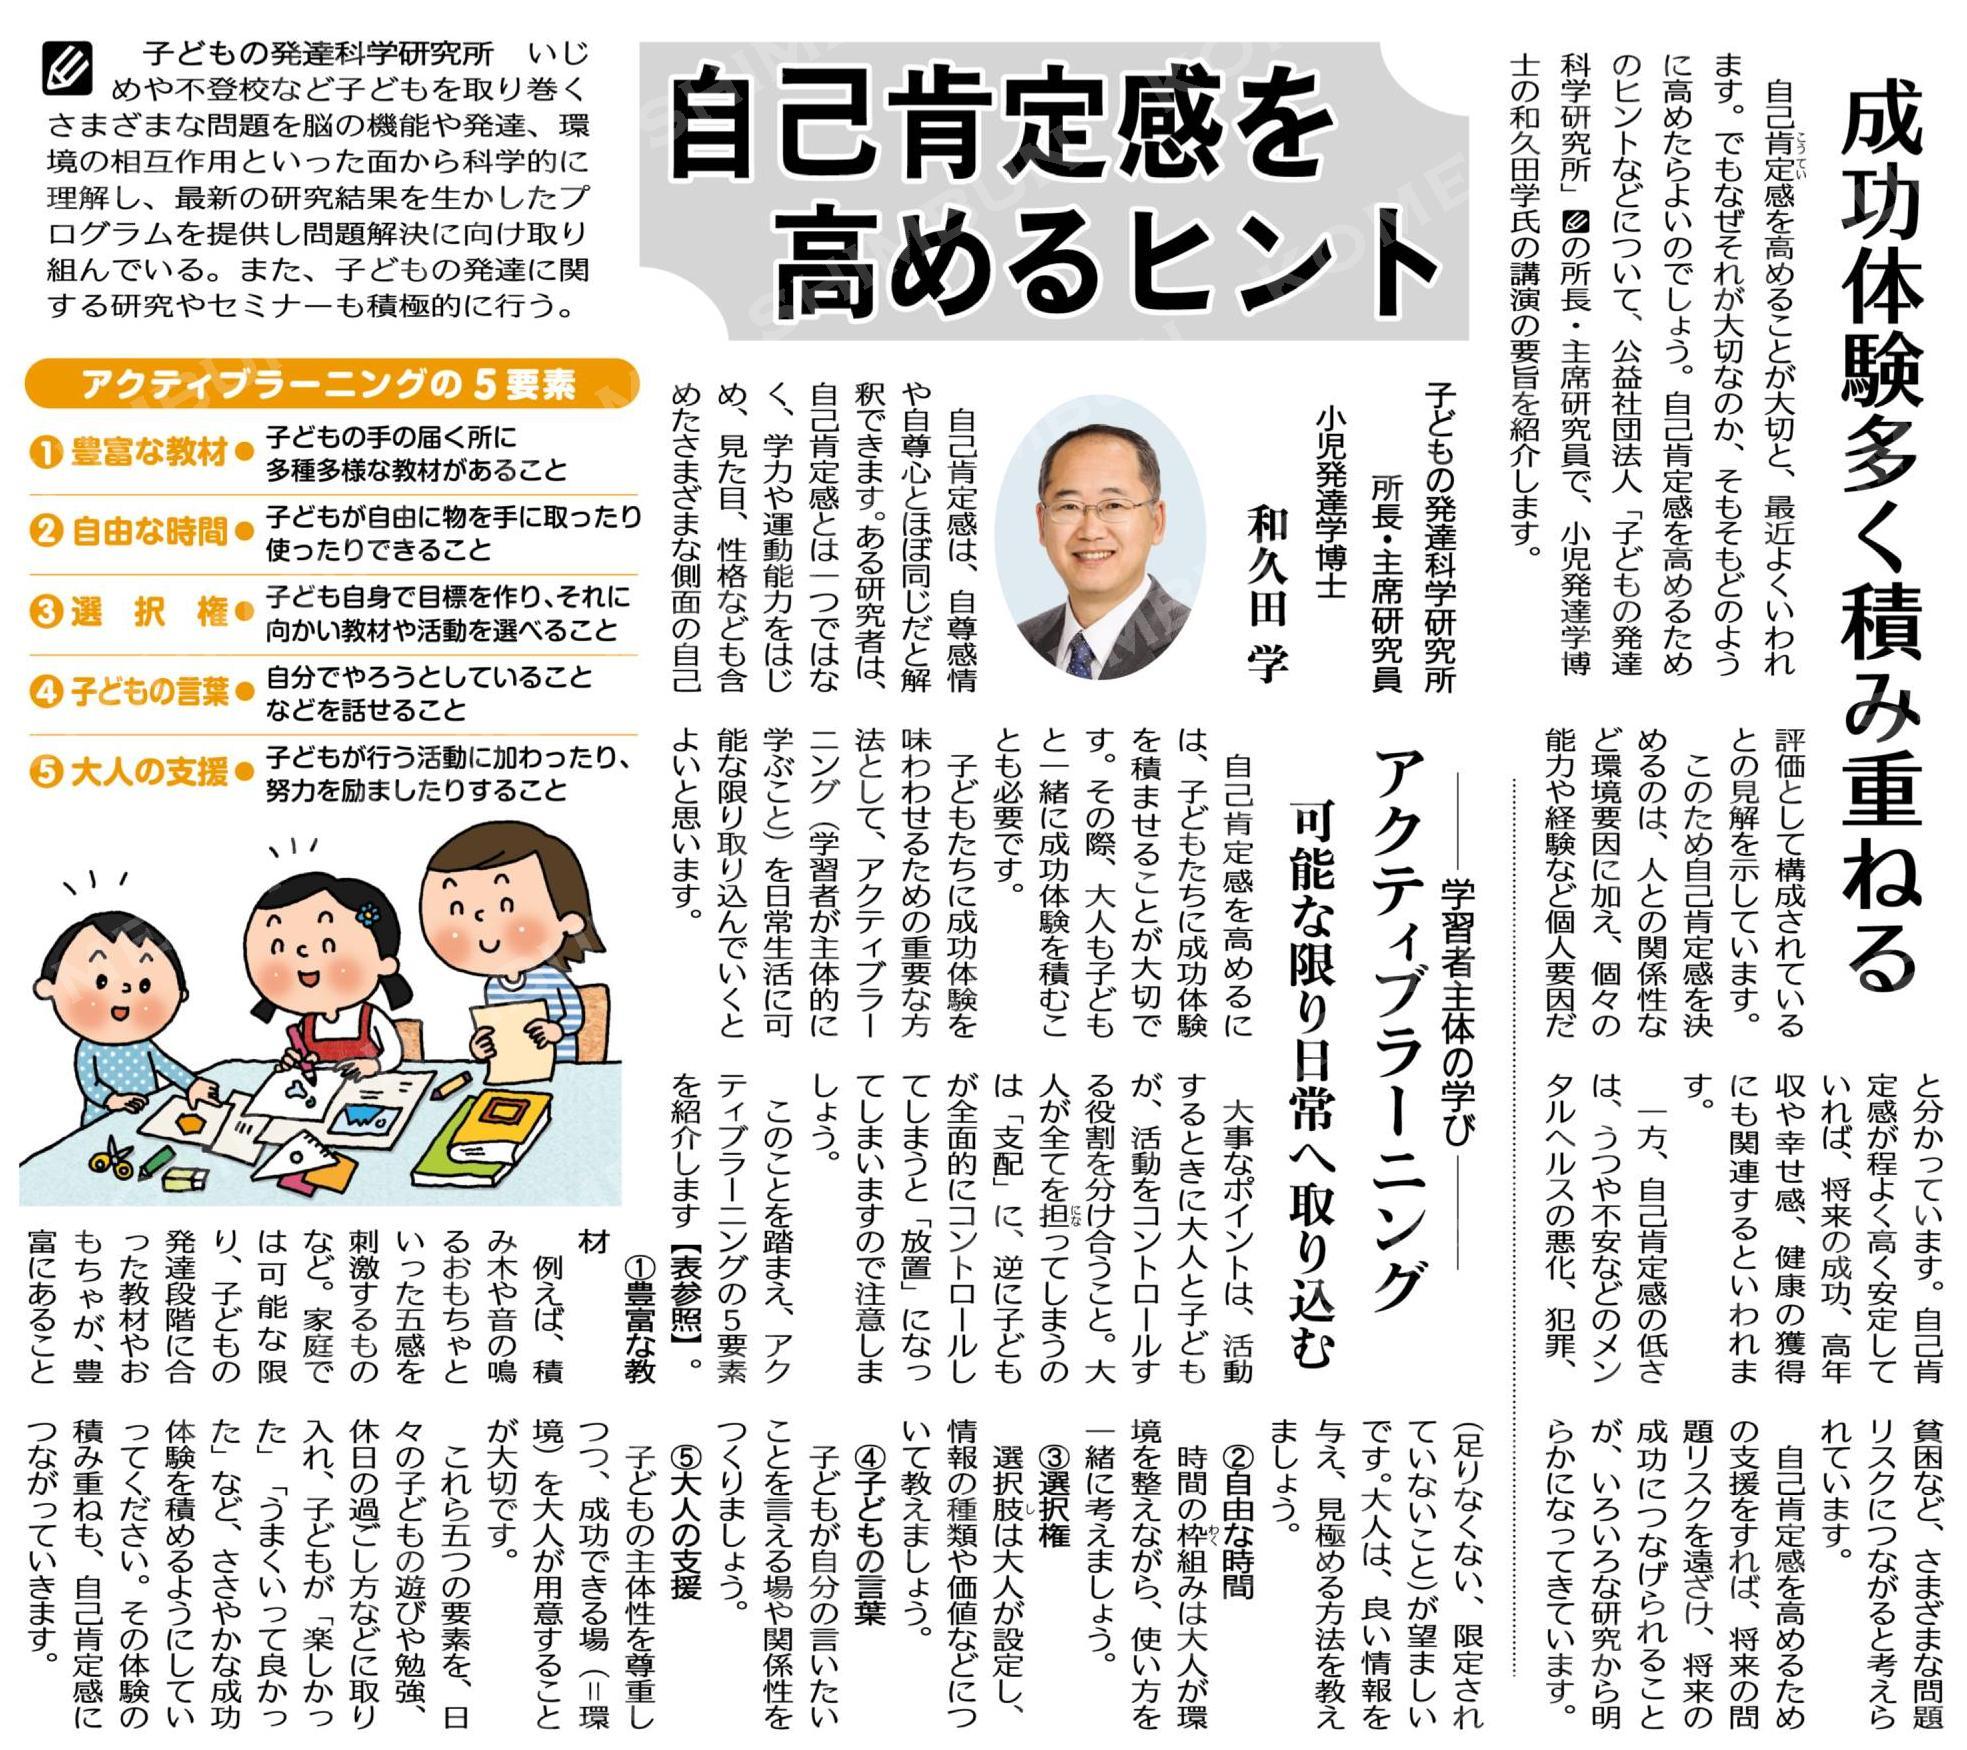 【メディア情報】10/13「公明新聞」 スペシャルセミナーの記事が掲載されました